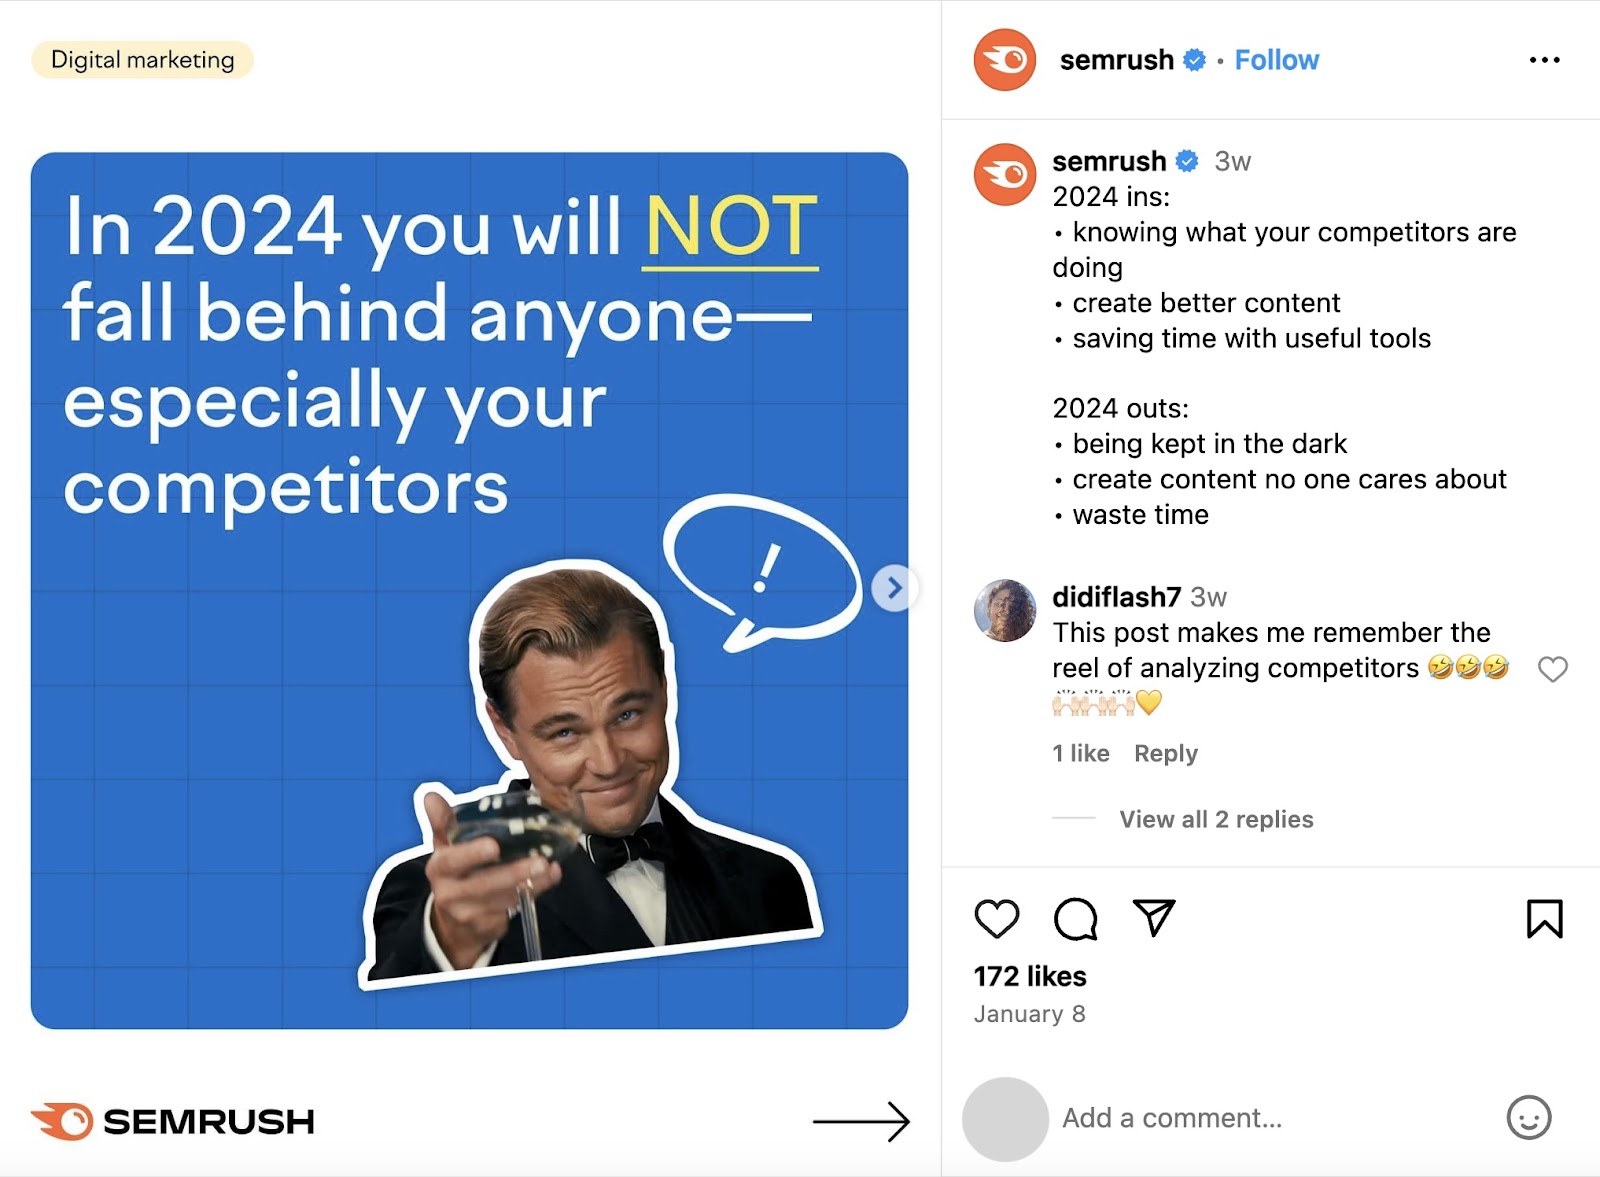 Semrush's Instagram post on 2024 trends